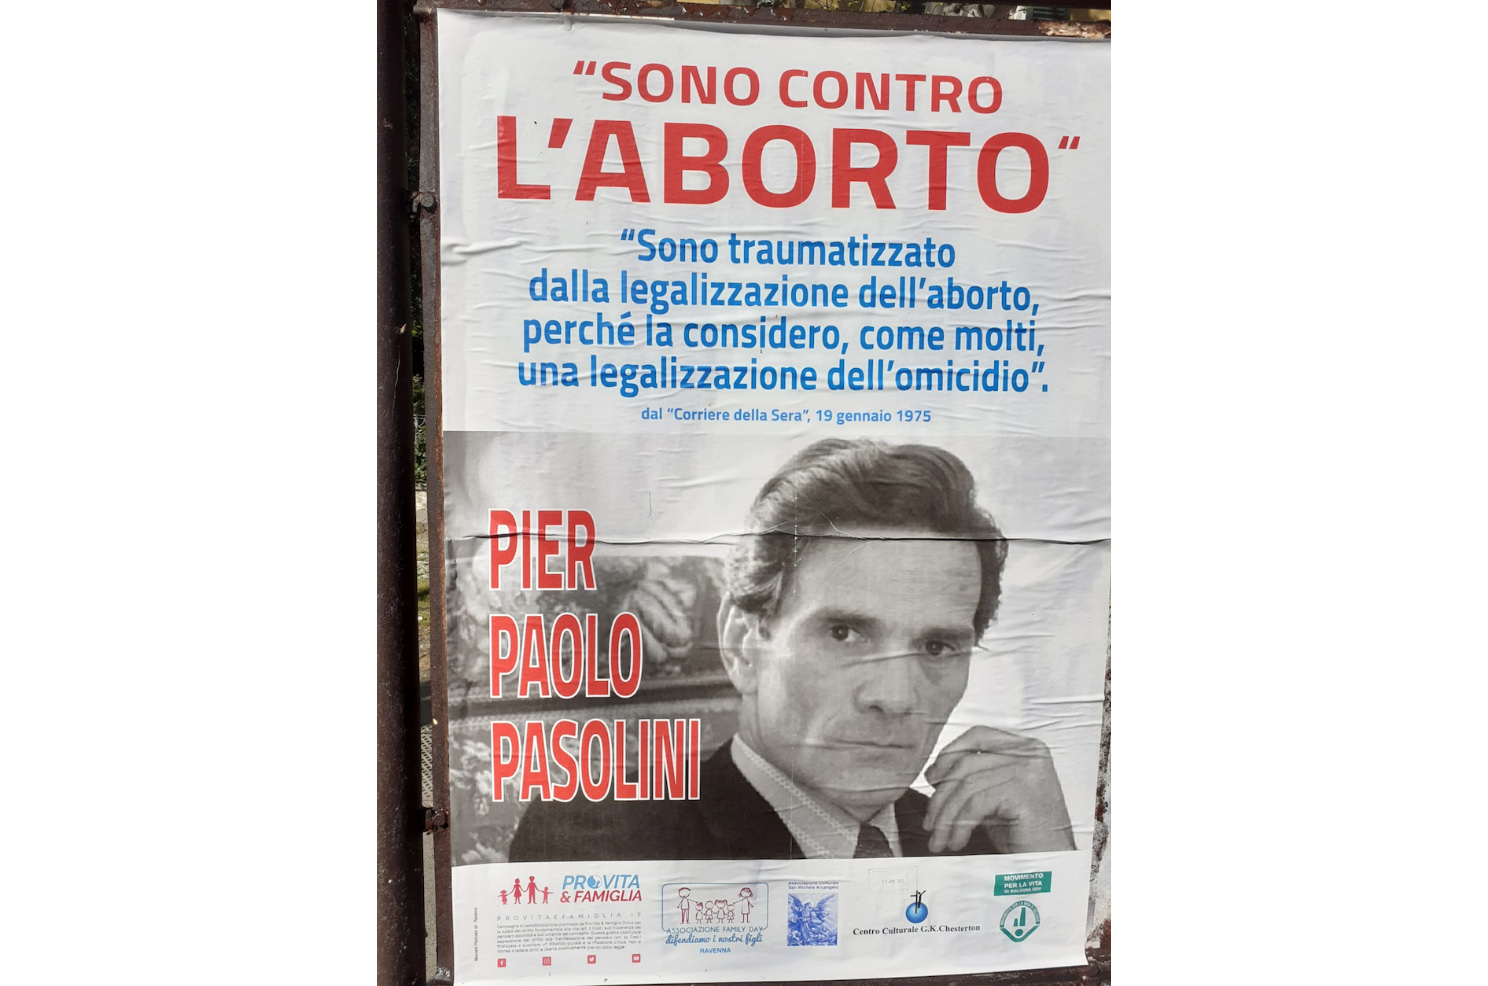 Pasolini contrario all'aborto. Affissioni di Pro Vita & Famiglia Emilia Romagna per il centenario della nascita 1